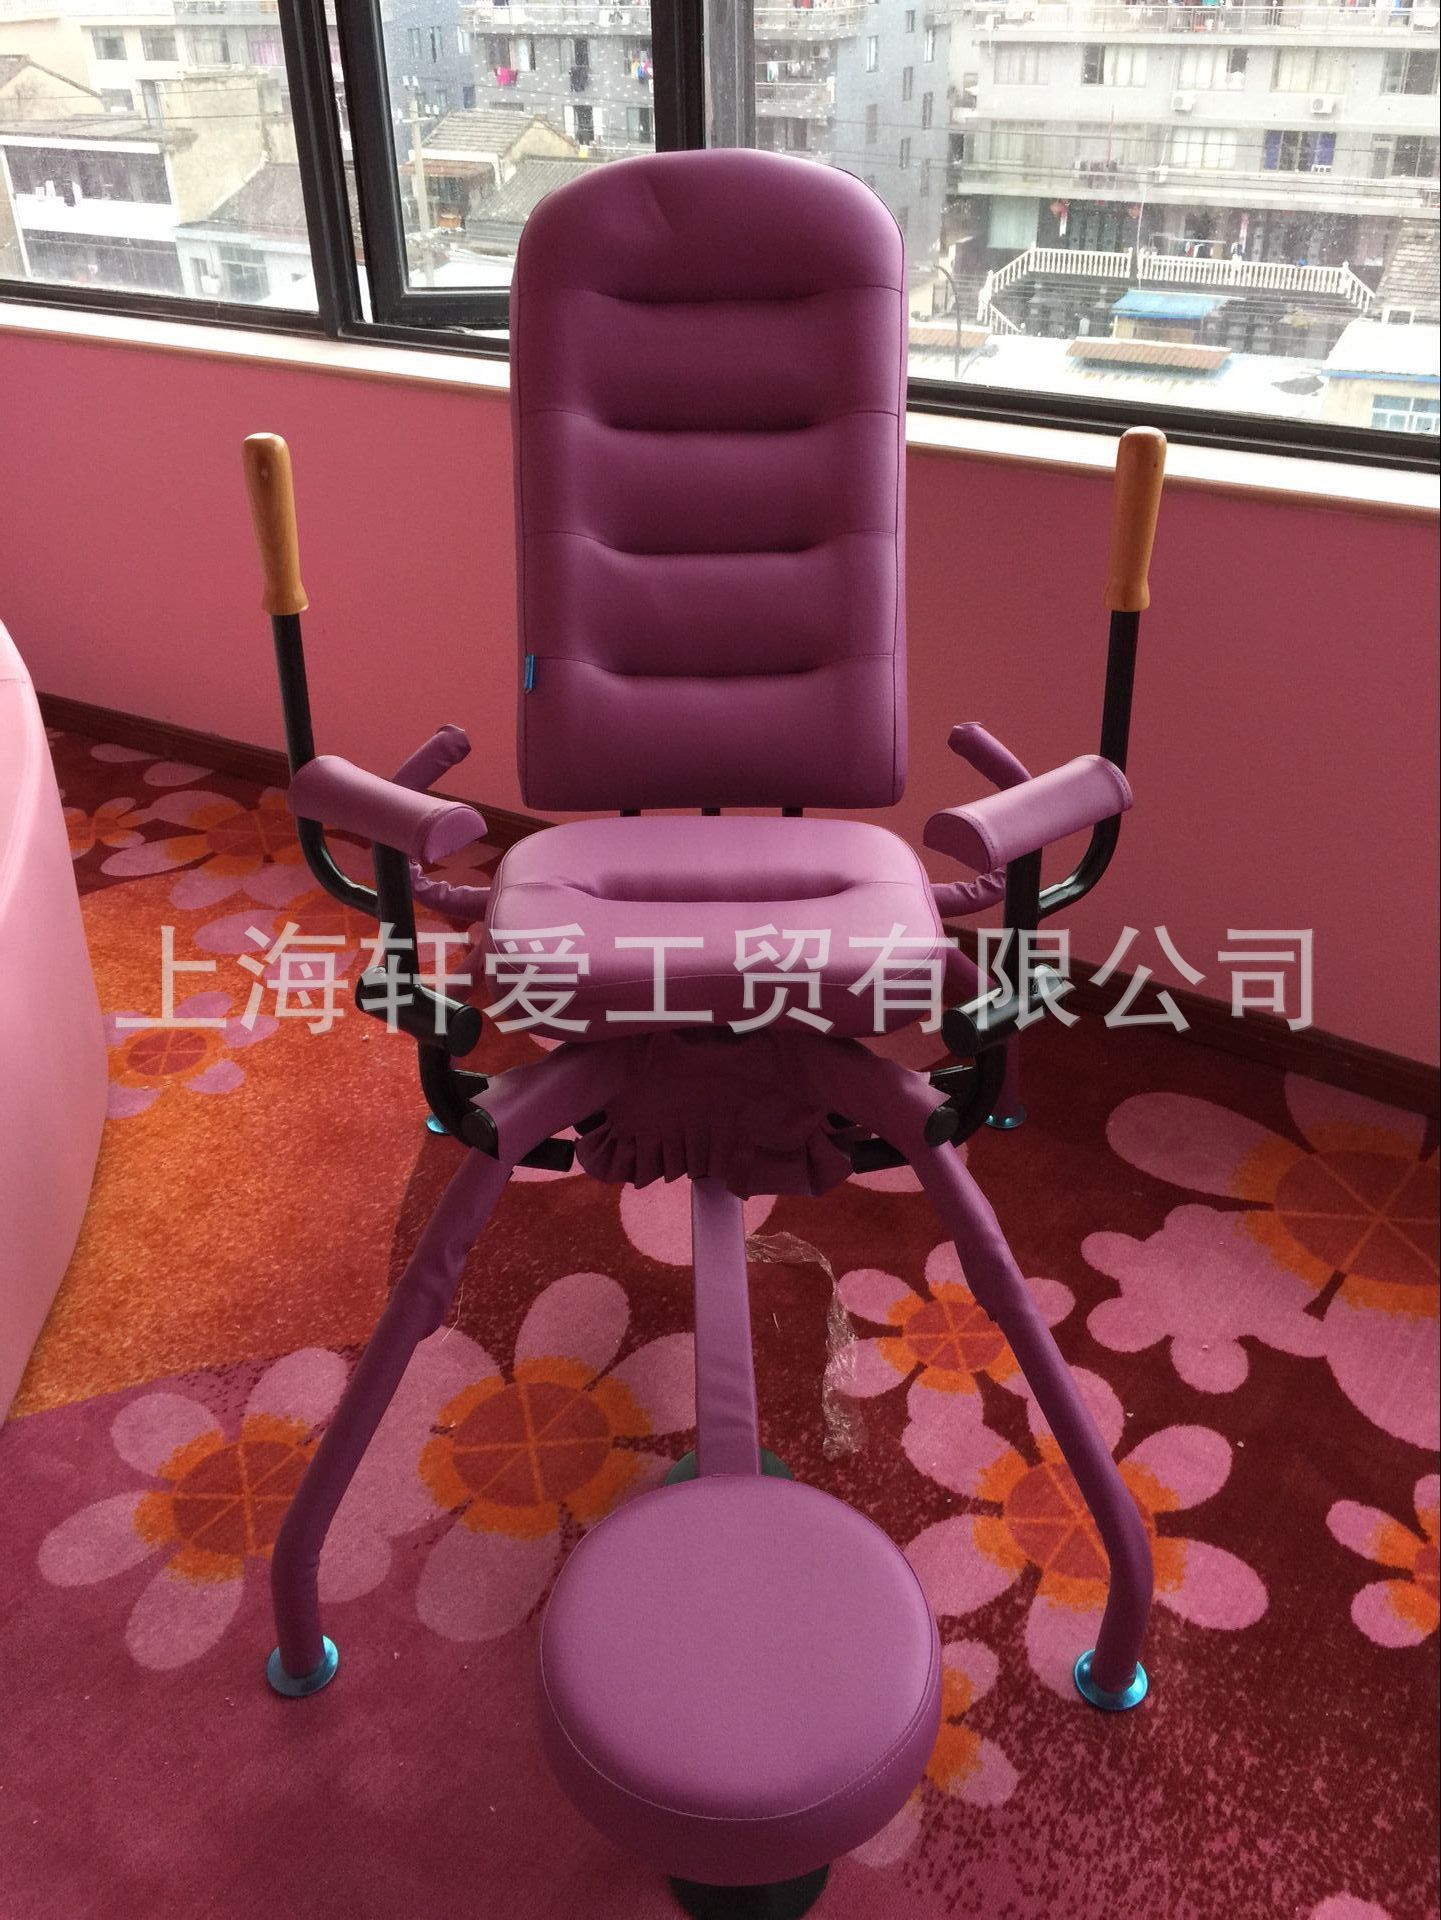 主题酒店情趣椅 夫妻情侣合欢椅 情趣宾馆客房设备 八爪椅电动椅-阿里巴巴